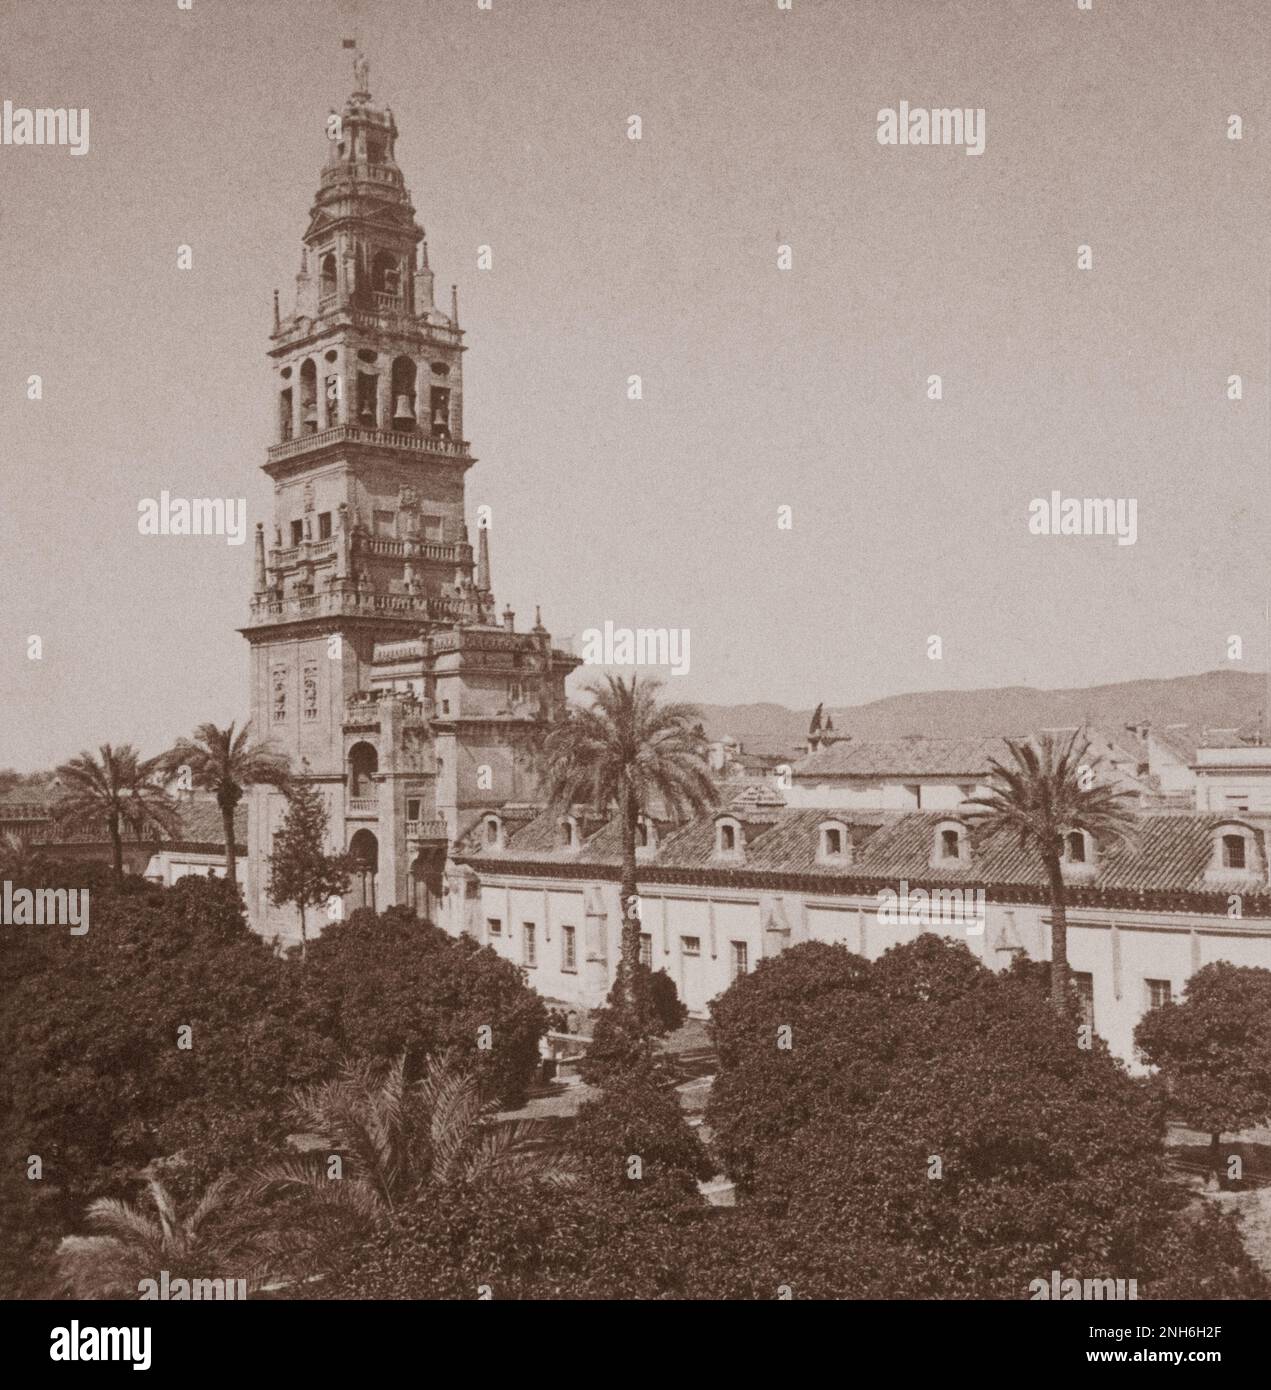 Architecture de la vieille Espagne. Cour des oranges et tour de beffroi (300 pi.), et porte de grâce, cathédrale, Córdoba, Espagne. 1902 Banque D'Images